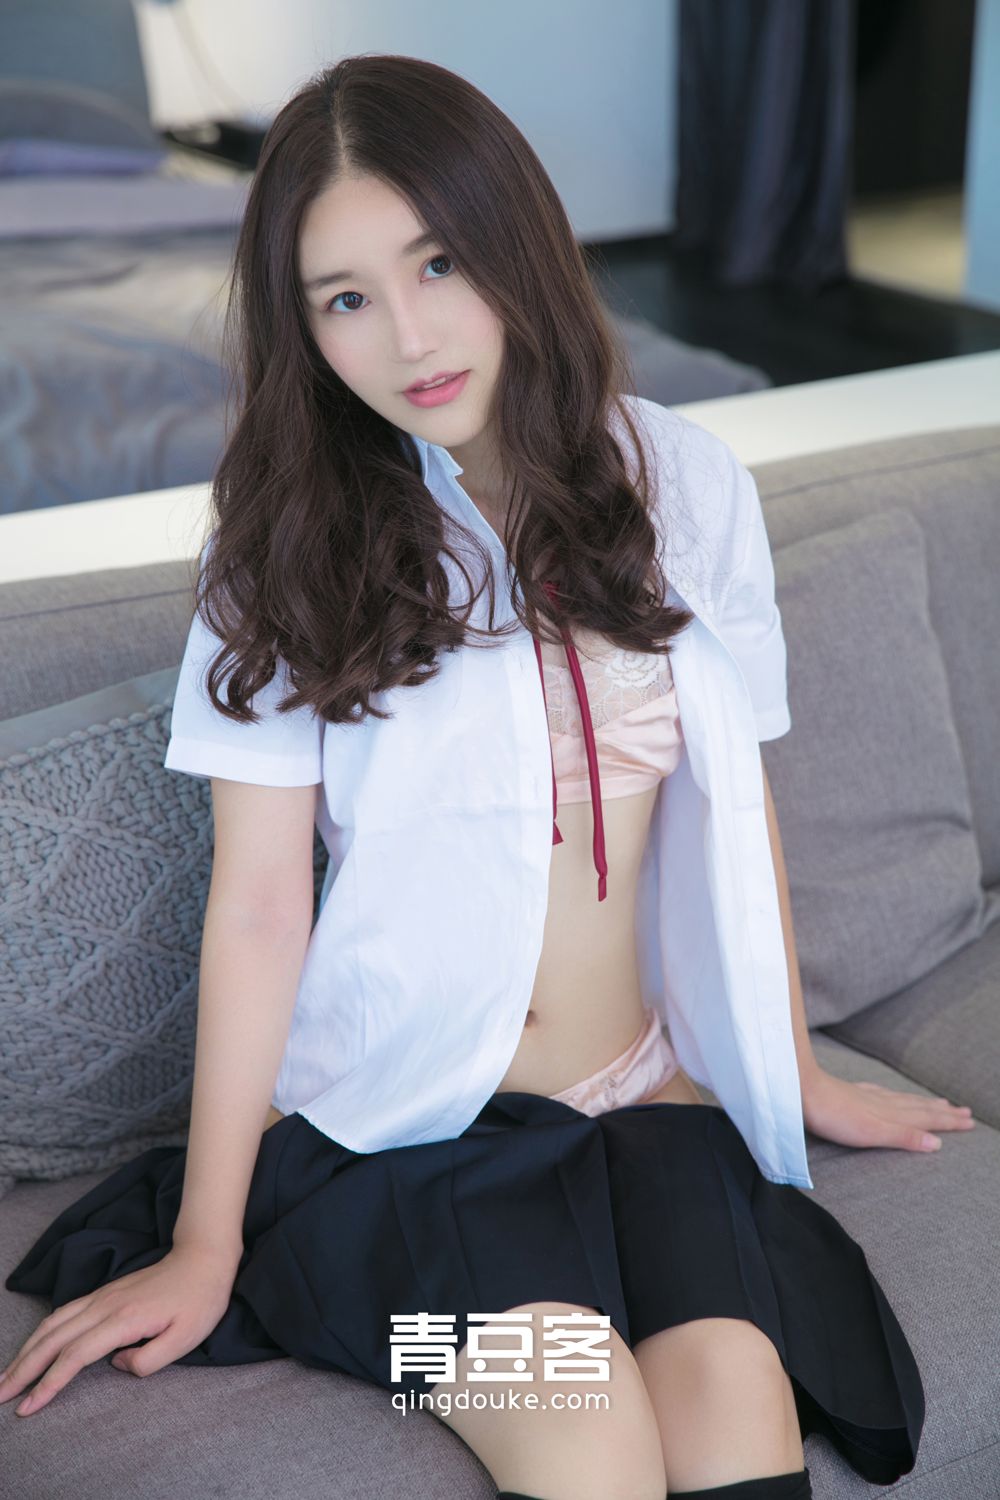 QingDouKe – Pink Underwear Nice Back Wei Niu Niu